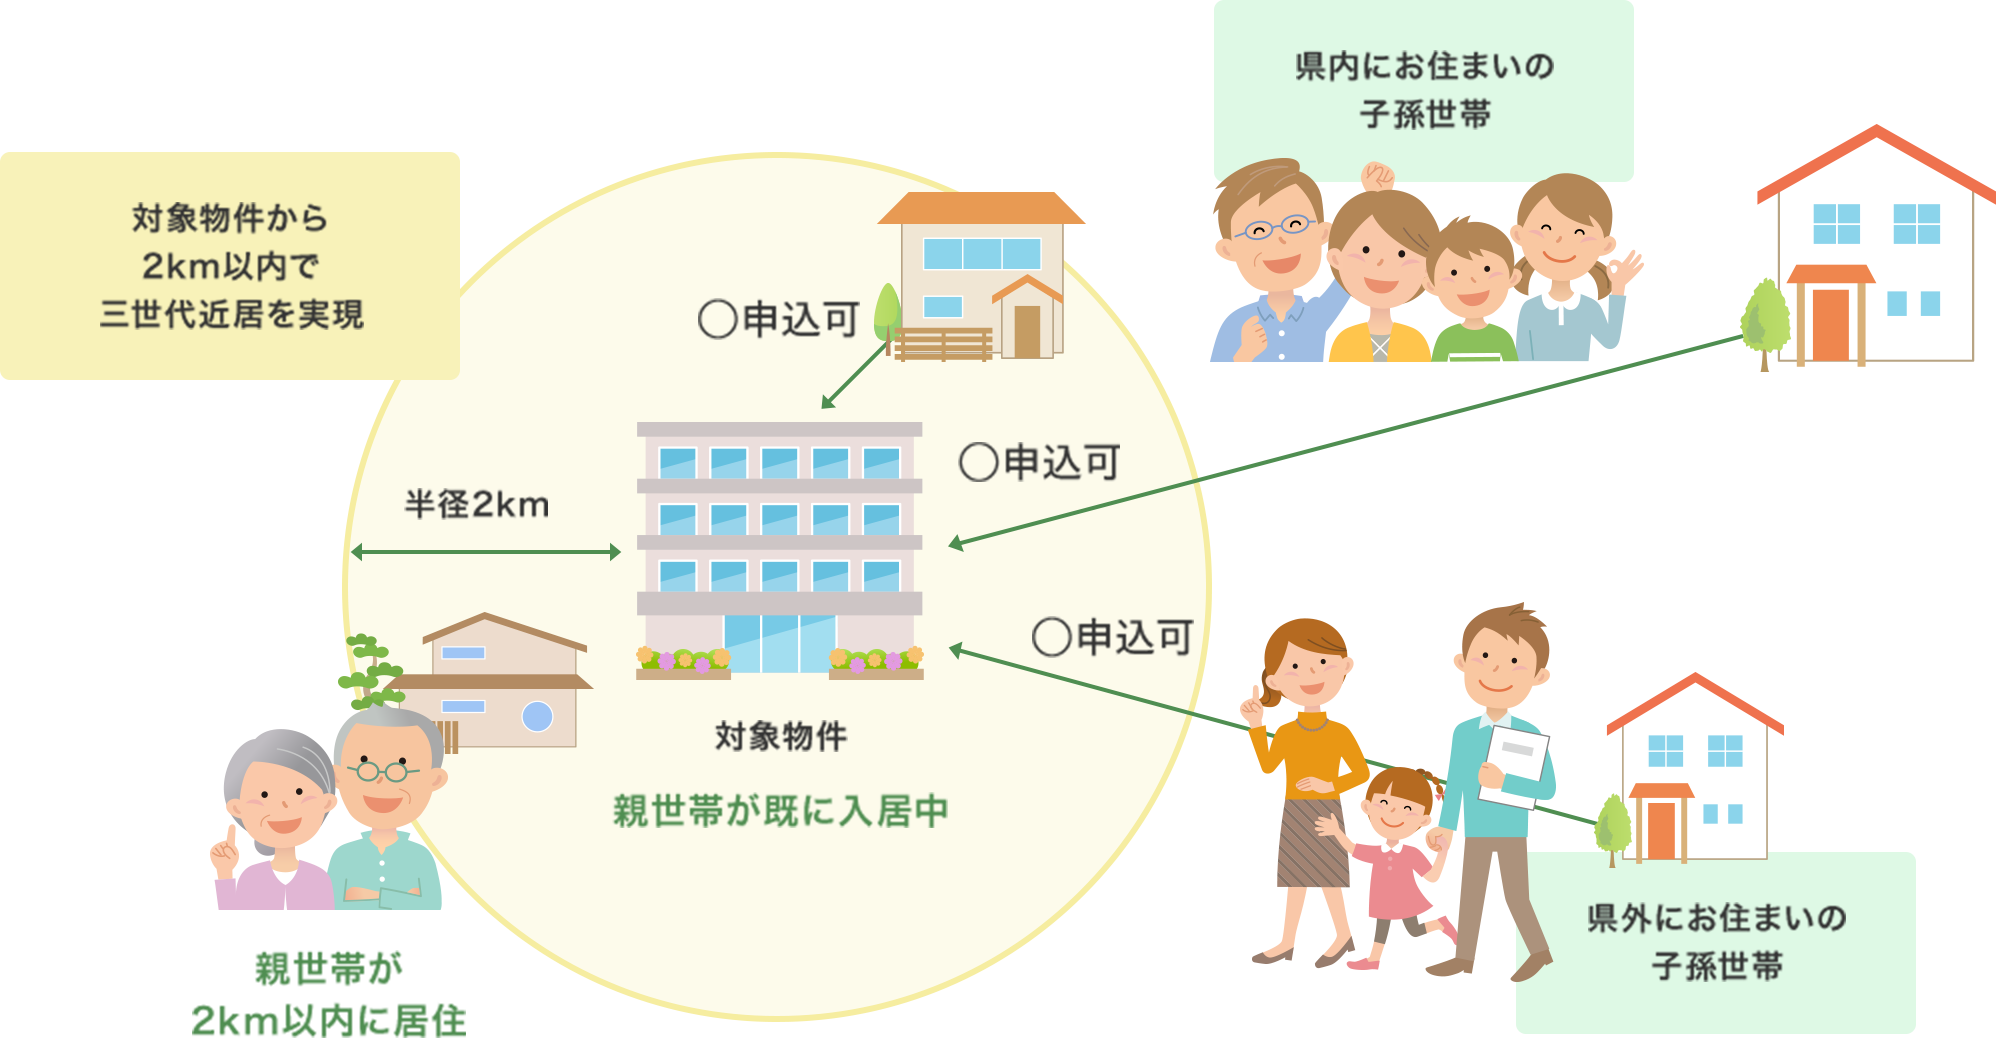 (1)対象物件または対象物件から2km以内に、親世帯が既に住んでいる場合